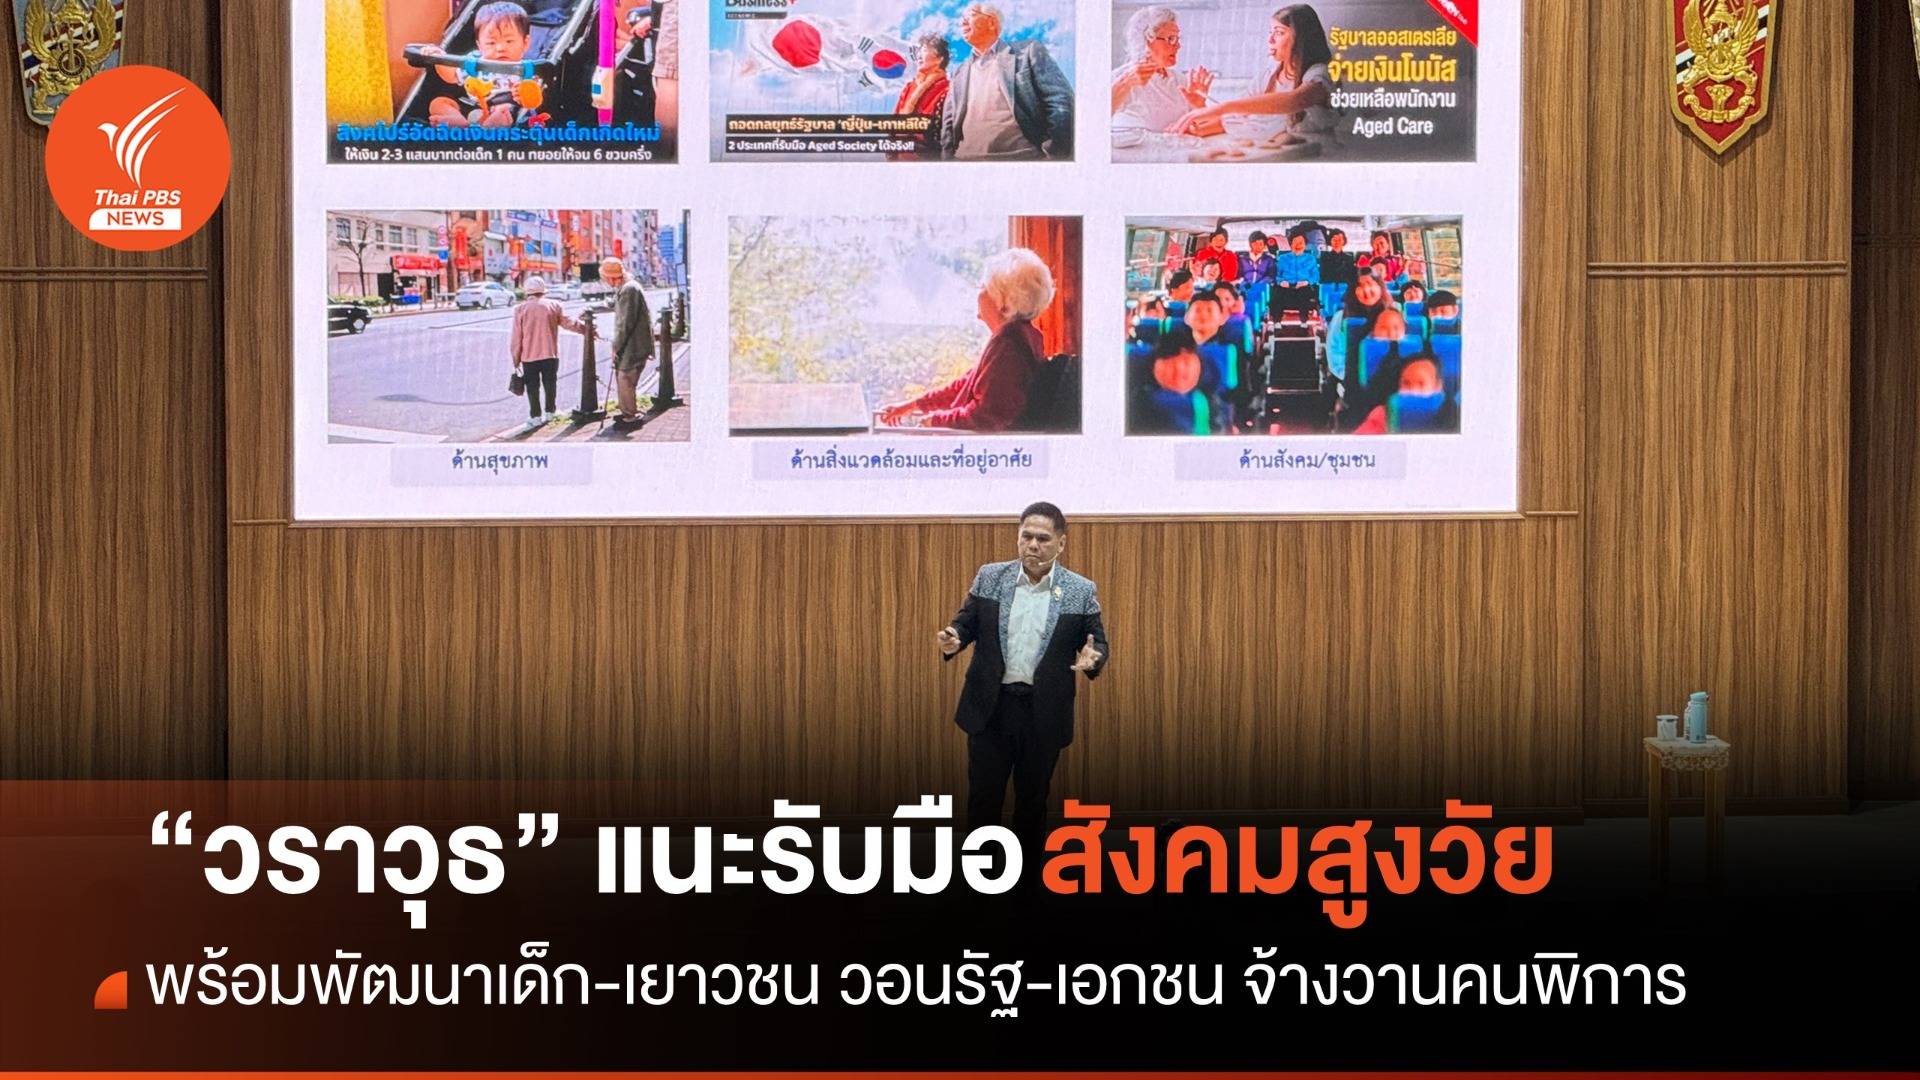 “วราวุธ” ระบุสังคมไทยต้องเตรียมรับมือผู้สูงวัย วอนรัฐ-เอกชน จ้างงานคนพิการ